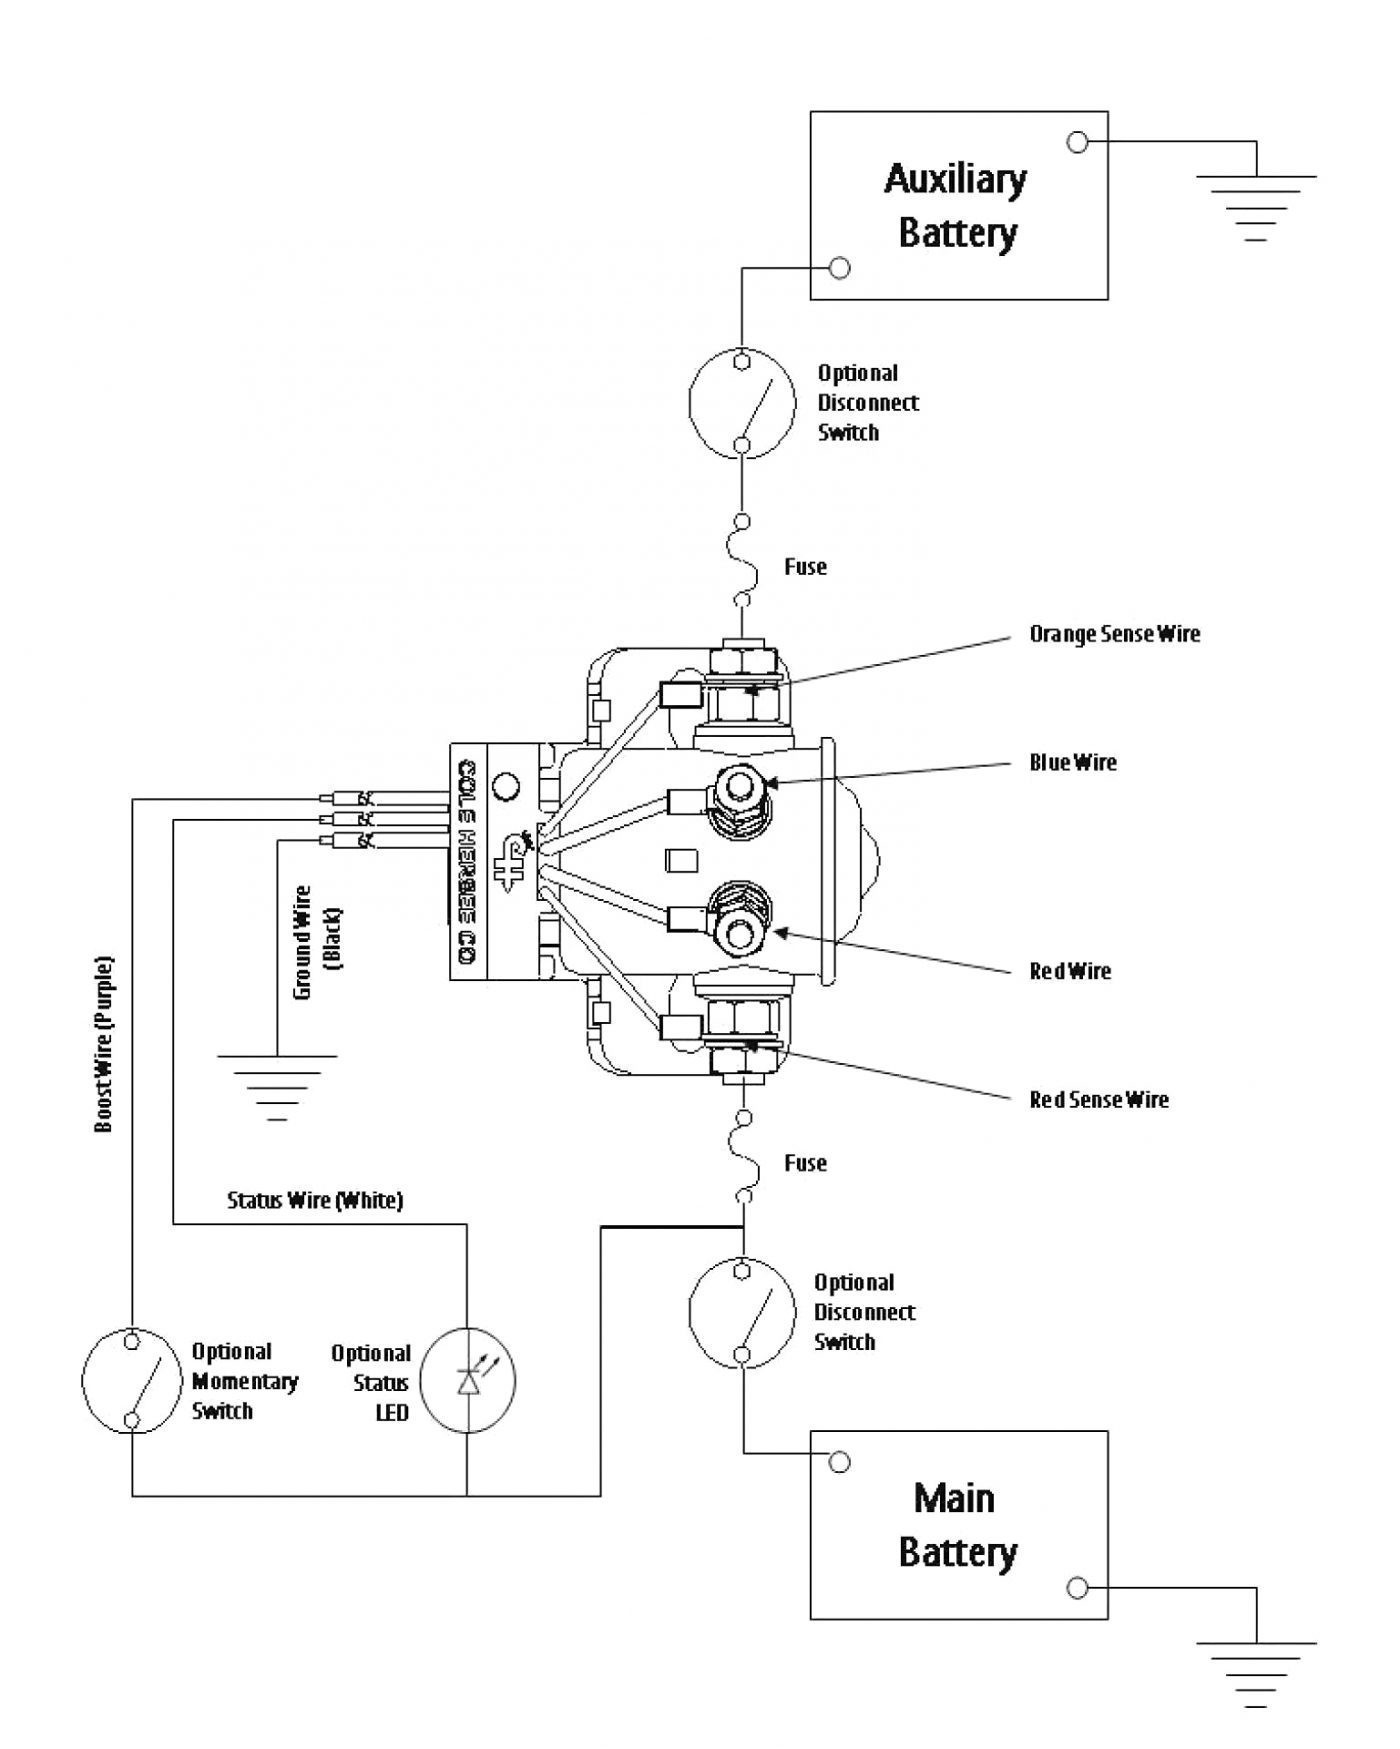 Harley Evo Engine Diagram Dyna Coils Wiring Diagram 1995 Schematics Wiring Diagrams • Of Harley Evo Engine Diagram